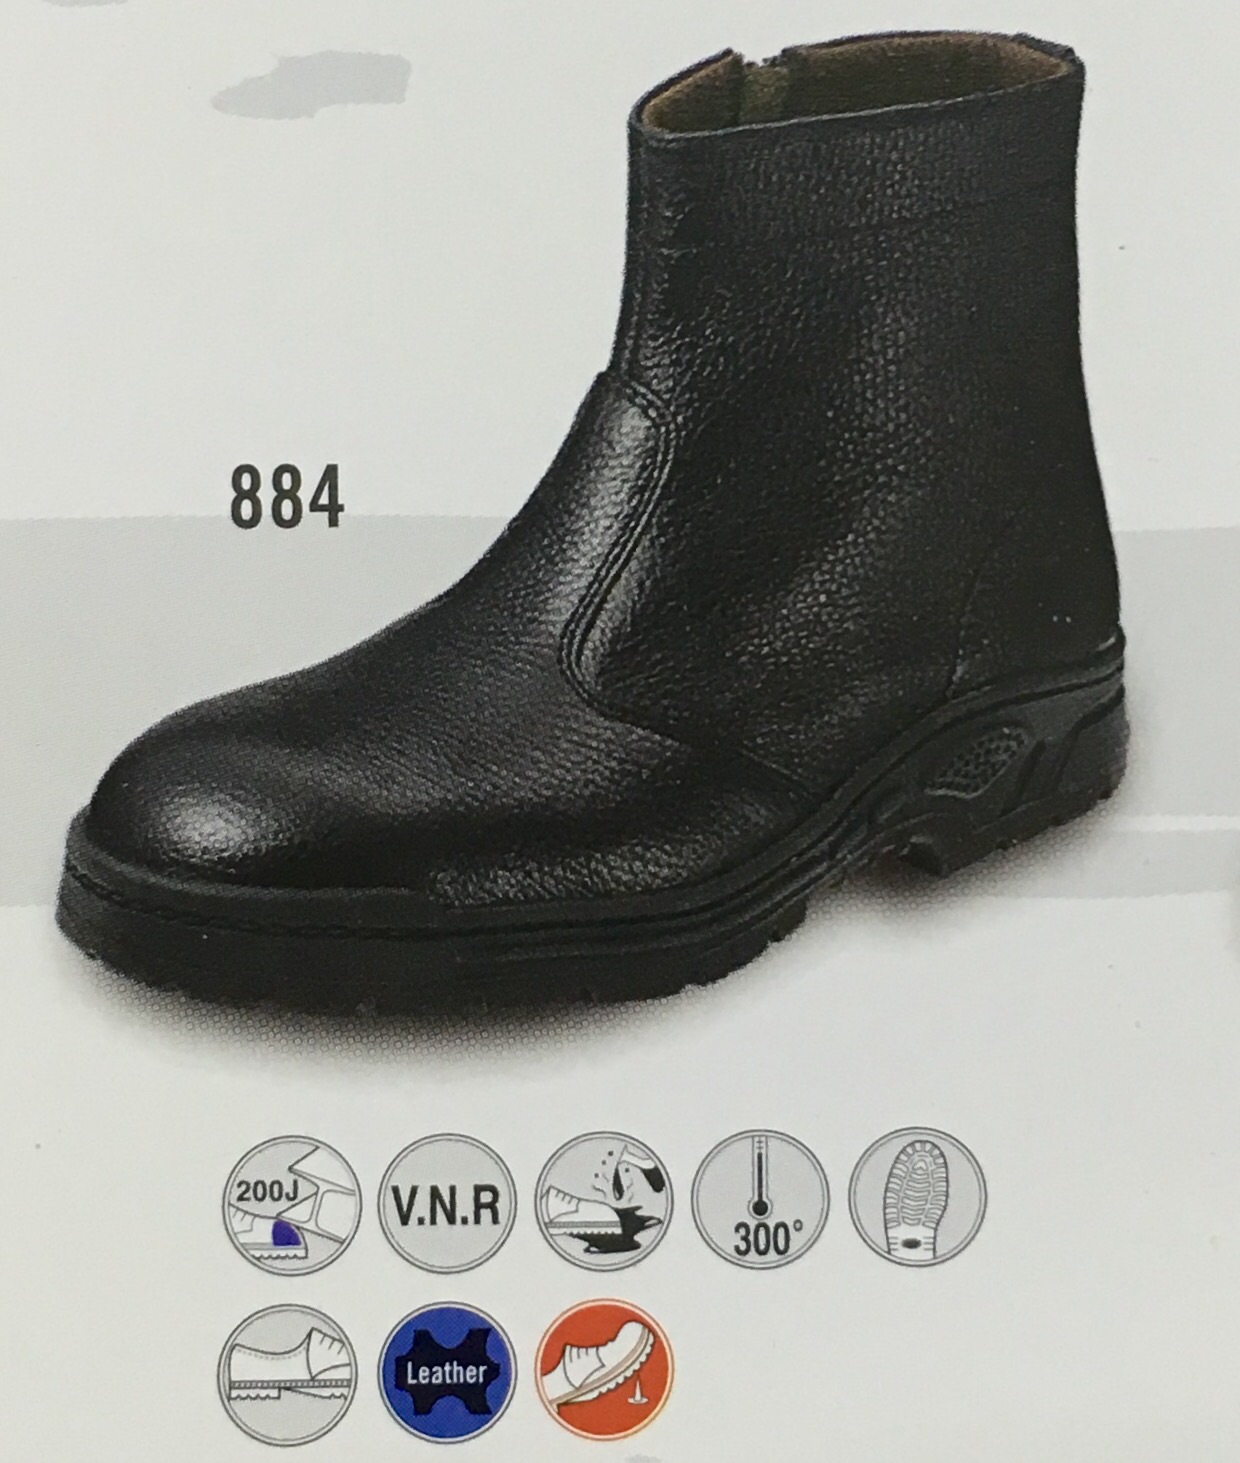 Megasafe Ankle Boots 884 Megasafe 